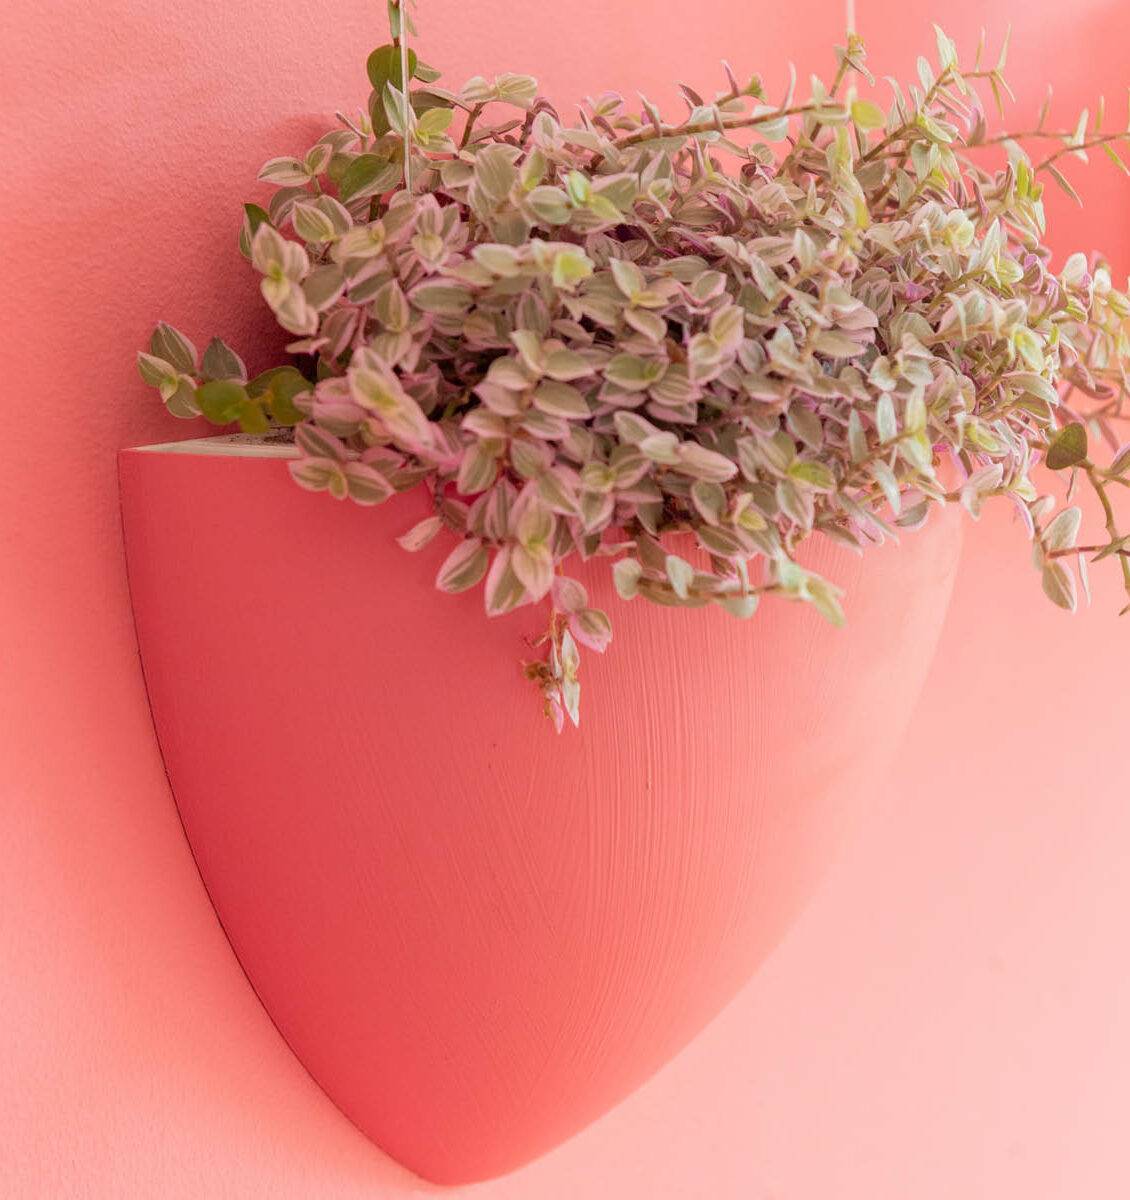 NL customized Botaniq hangbloempot in het roze aan een roze muur